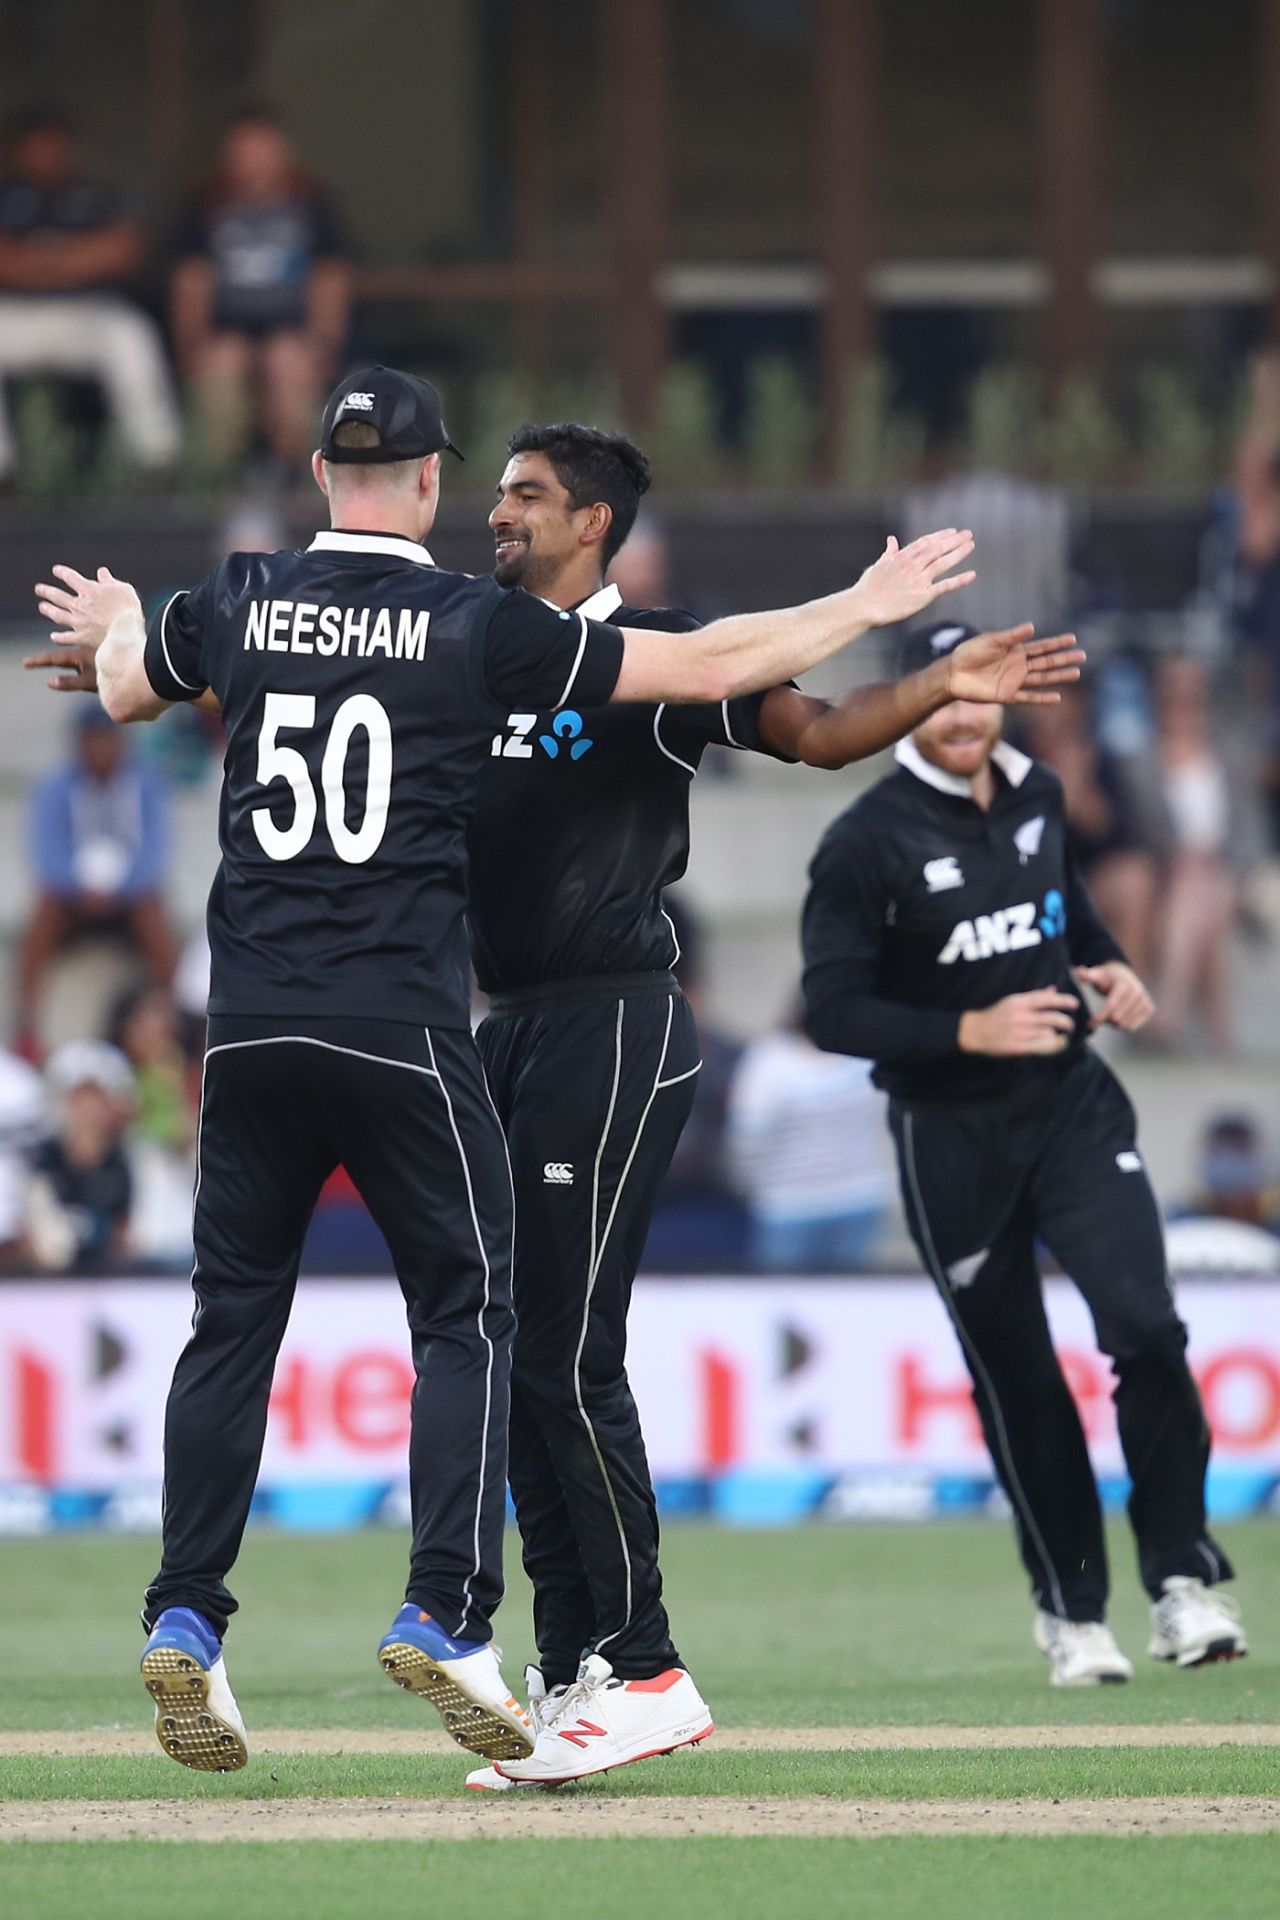 Ish Sodhi celebrates with Jimmy Neesham after a wicket, New Zealand v Sri Lanka, 1st ODI, Mount Maunganui, January 3, 2019